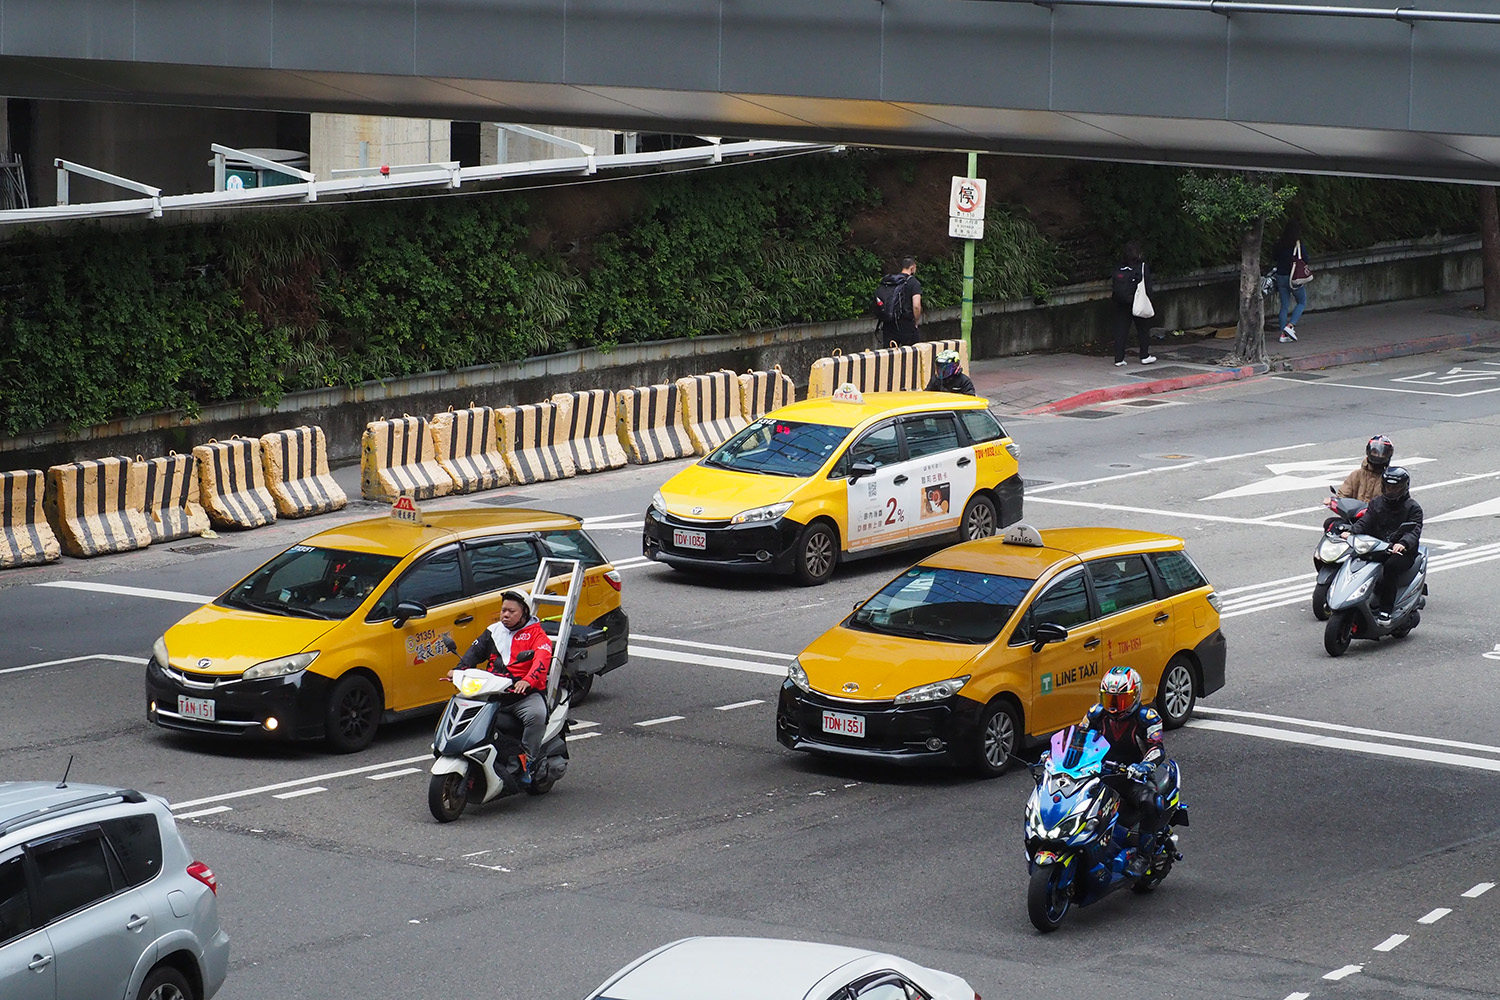 台湾のタクシー車種に見られた新たな傾向